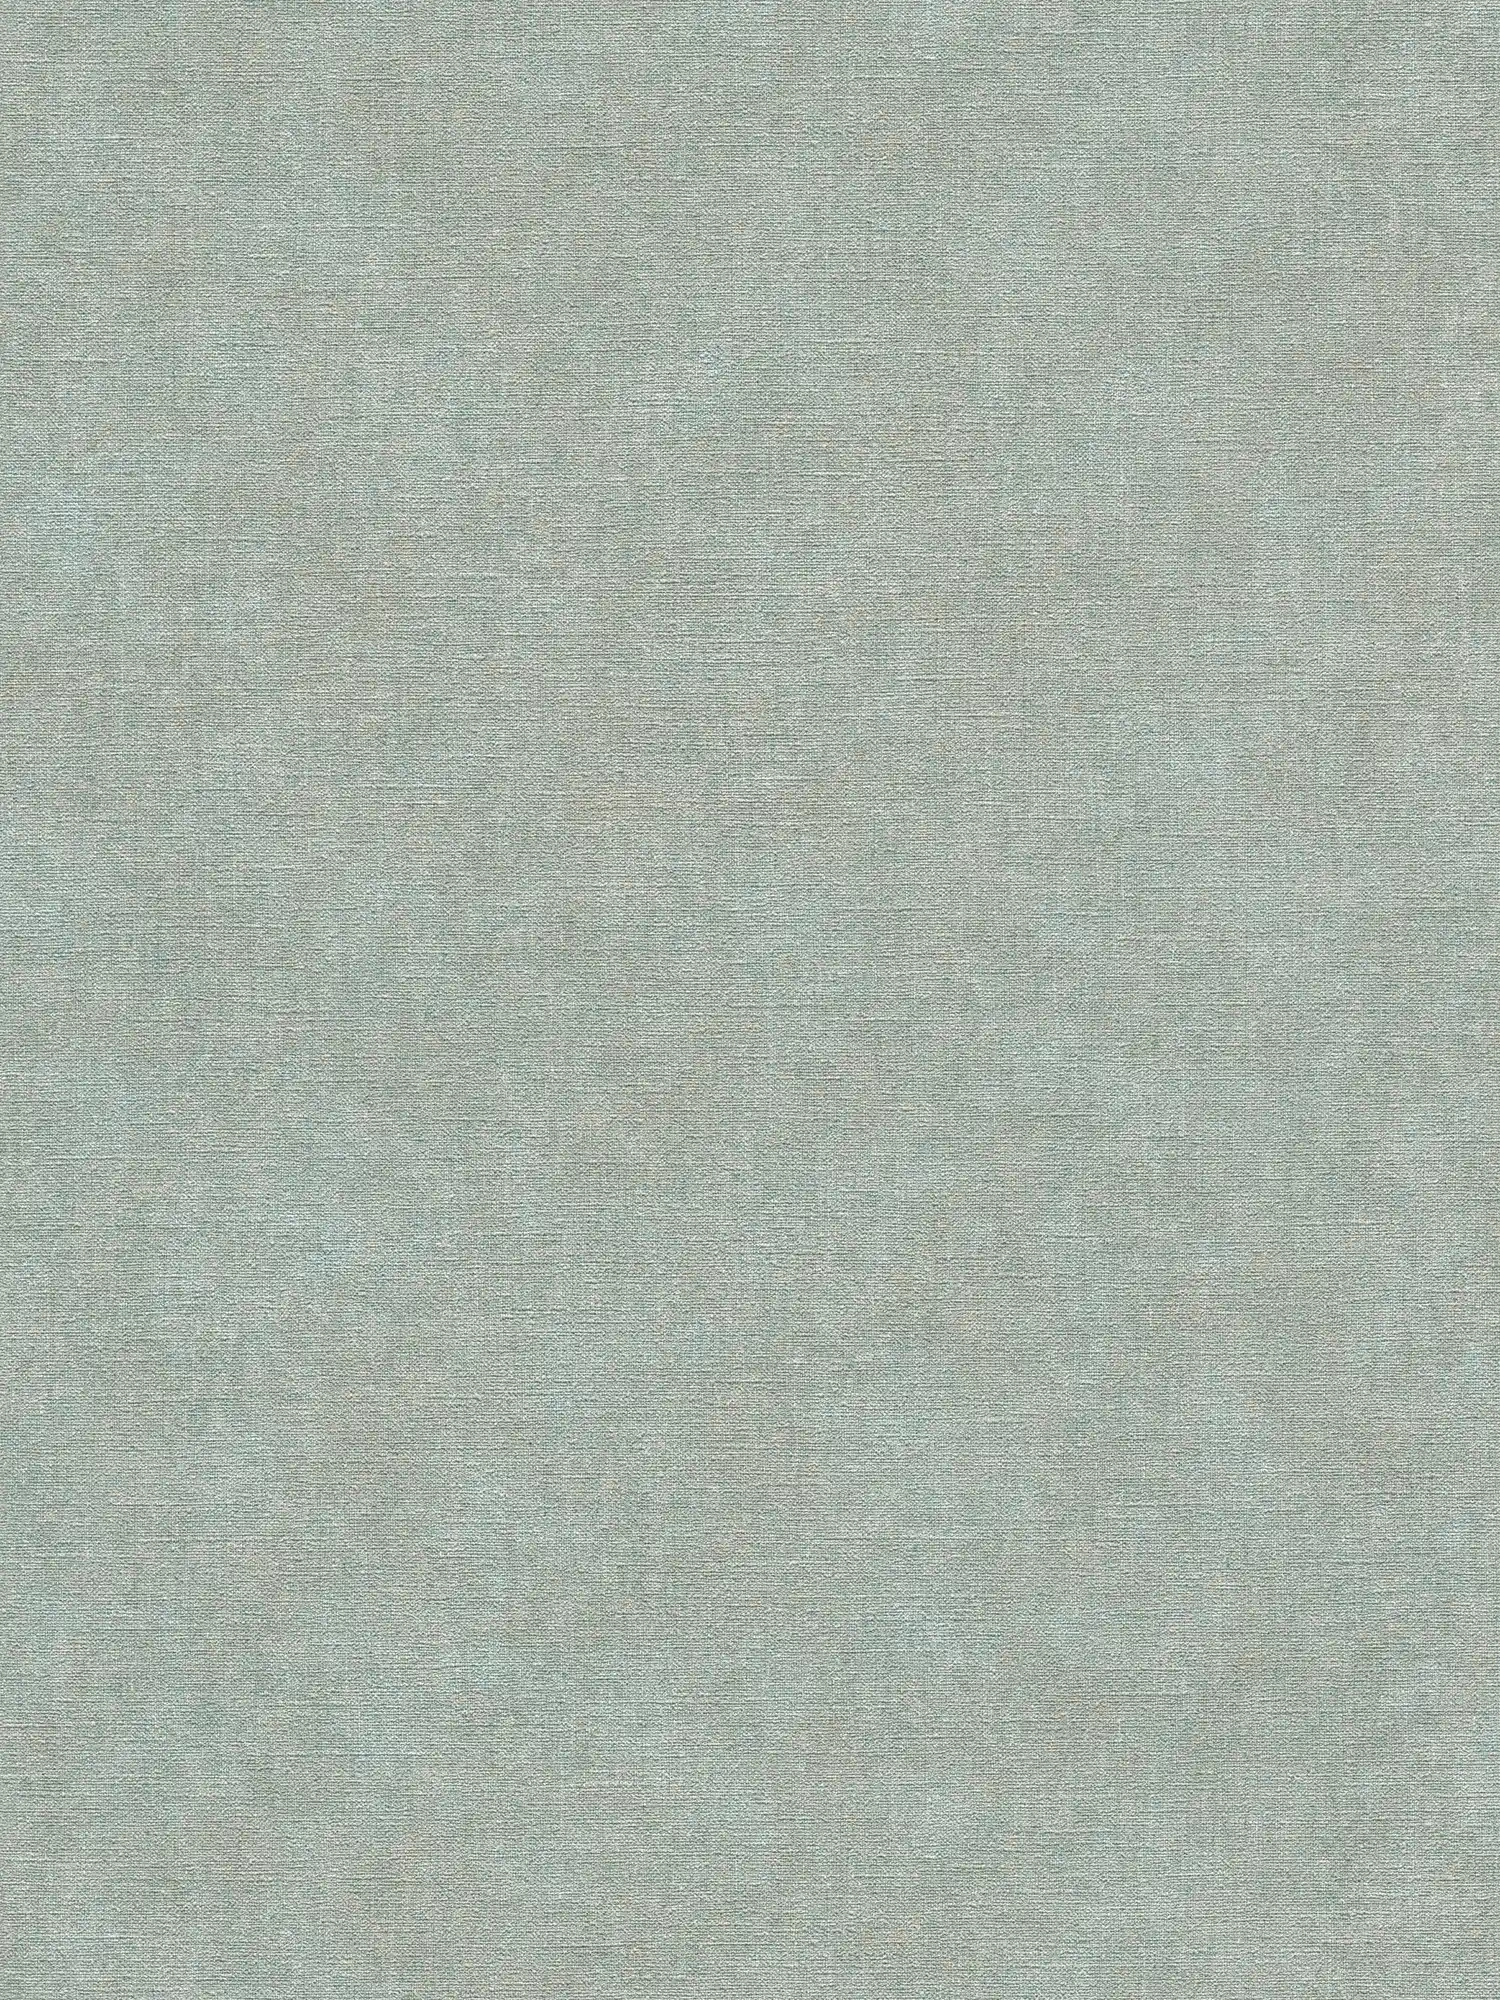 Vliesbehang met lichte textuur in gipslook - beige, bruin, blauw
